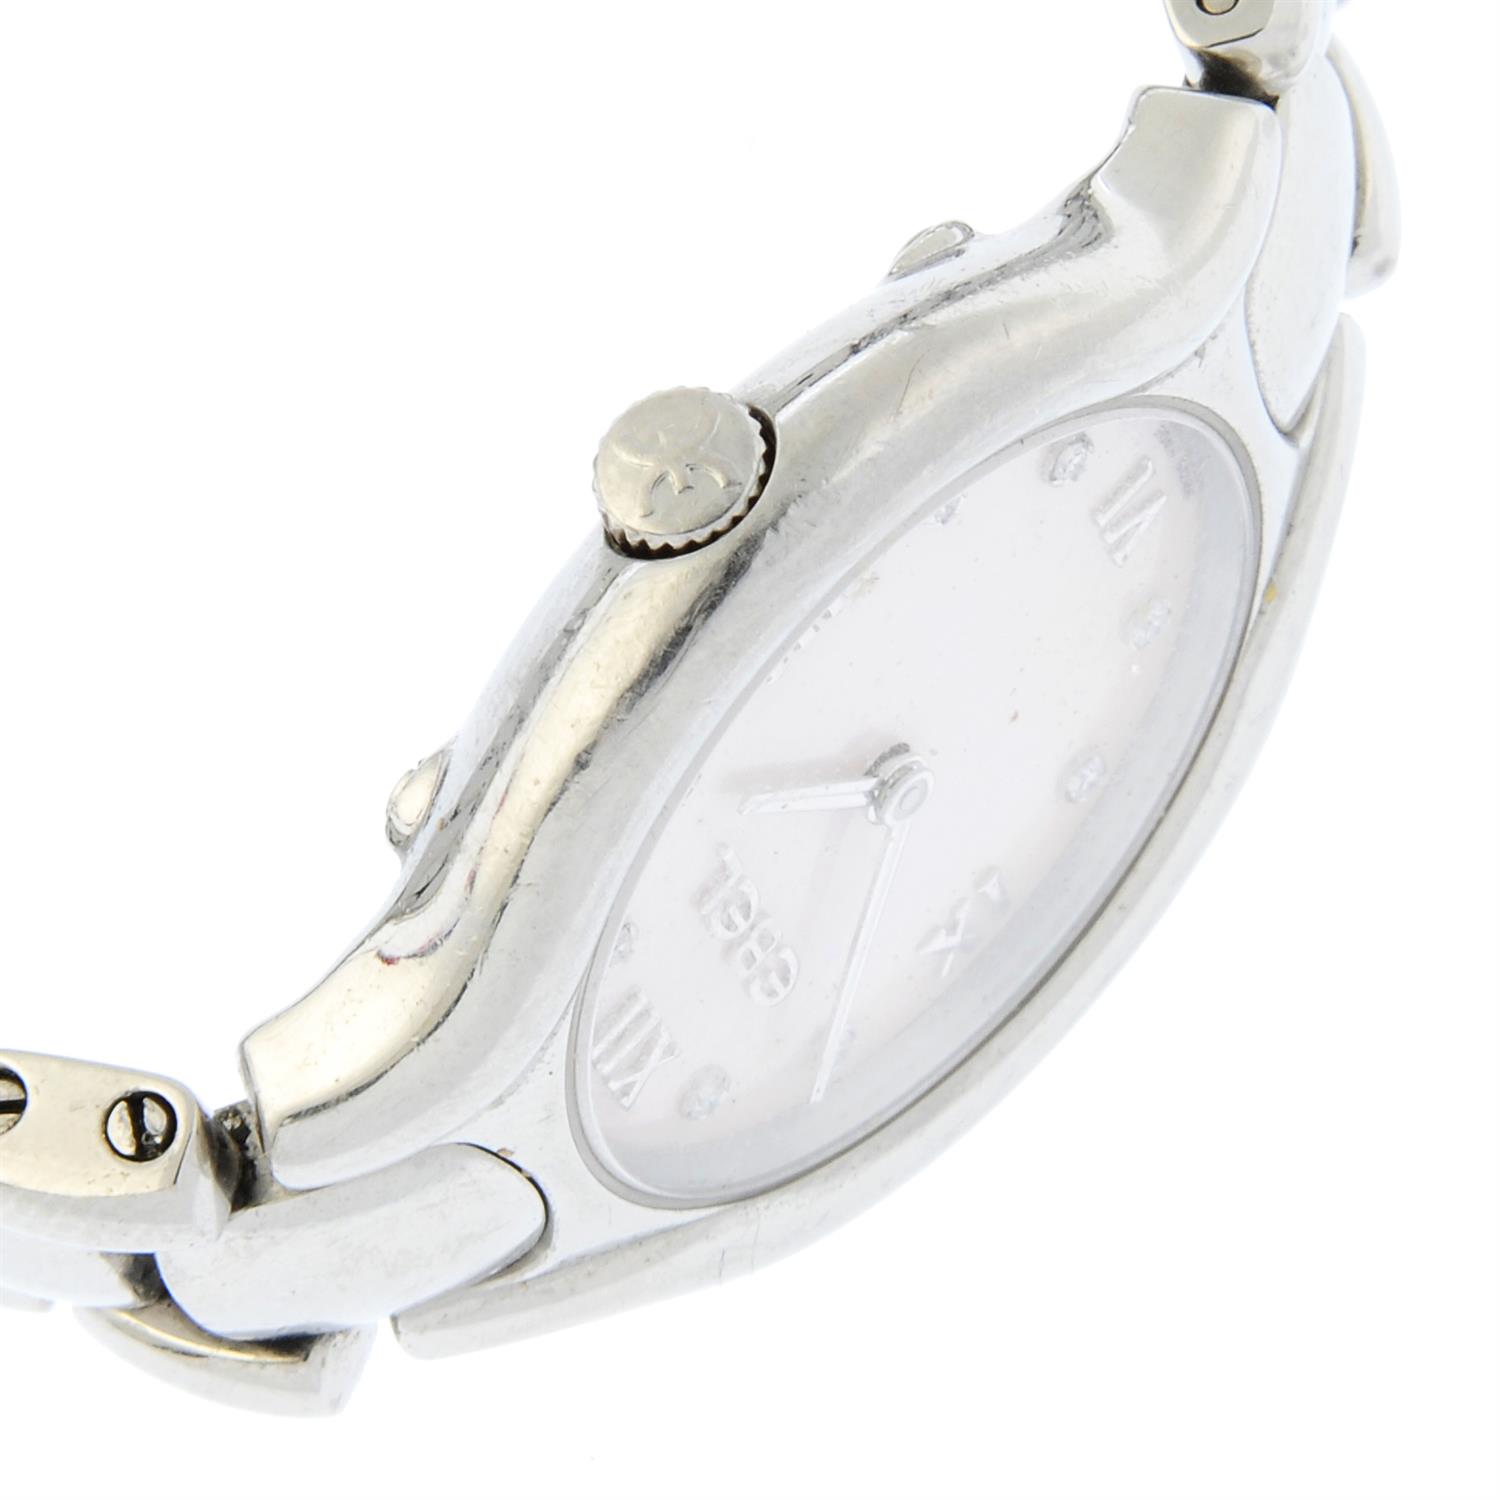 Ebel - a Beluga watch, 24mm. - Image 3 of 4